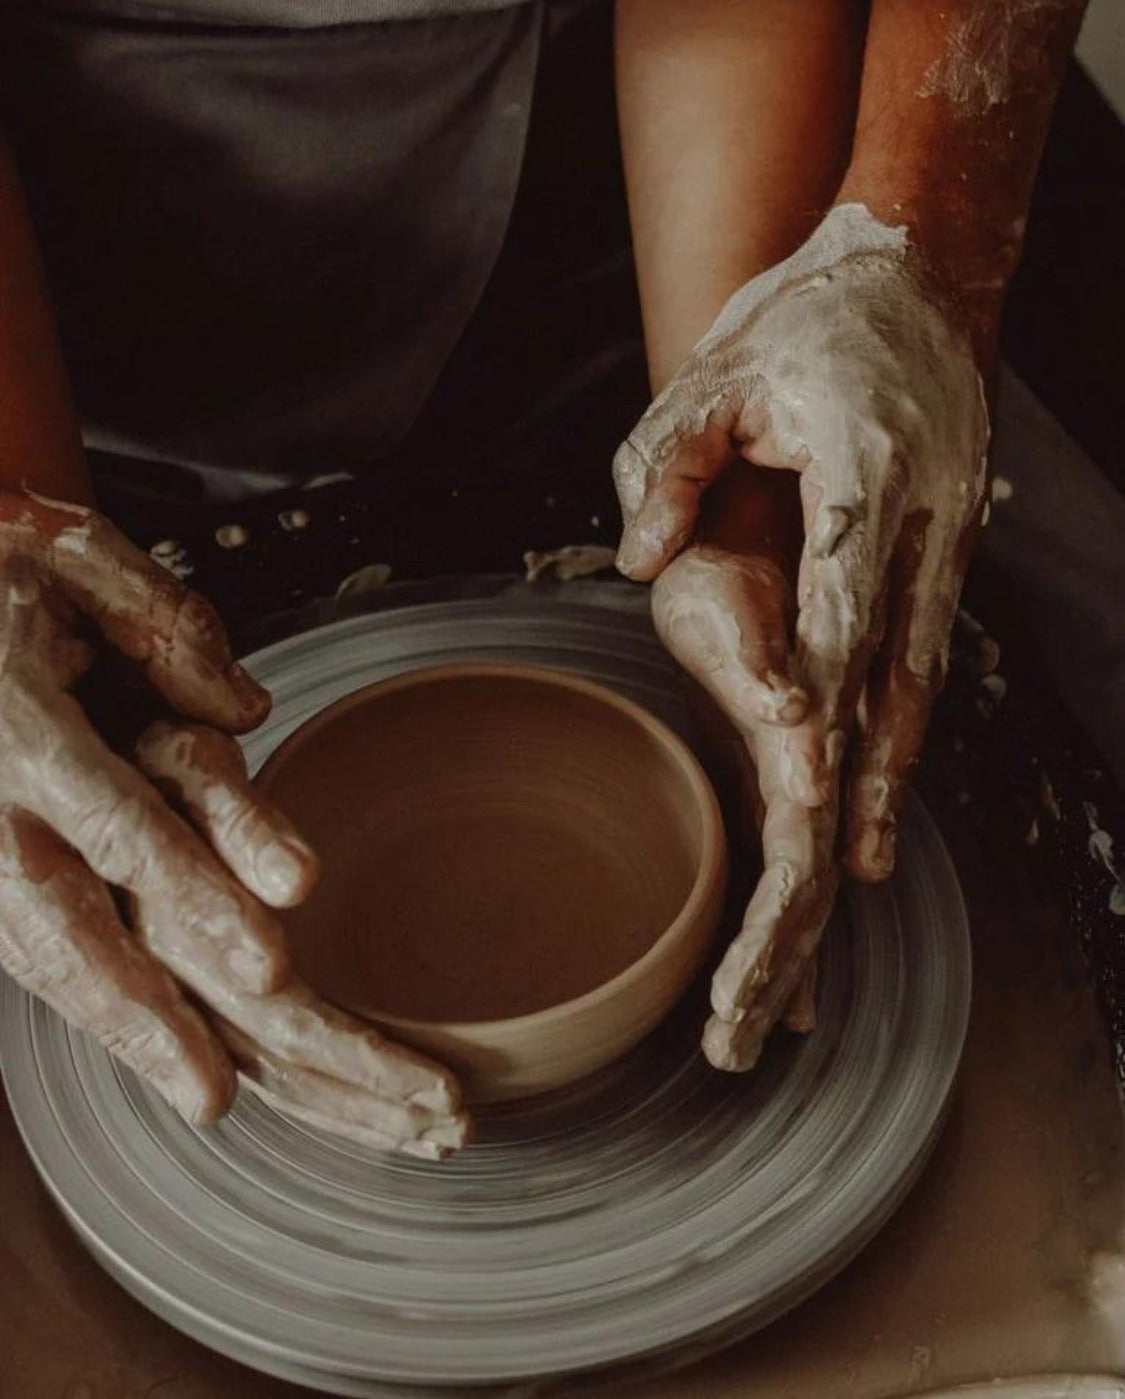 Deux personnes font de la poterie ensemble 